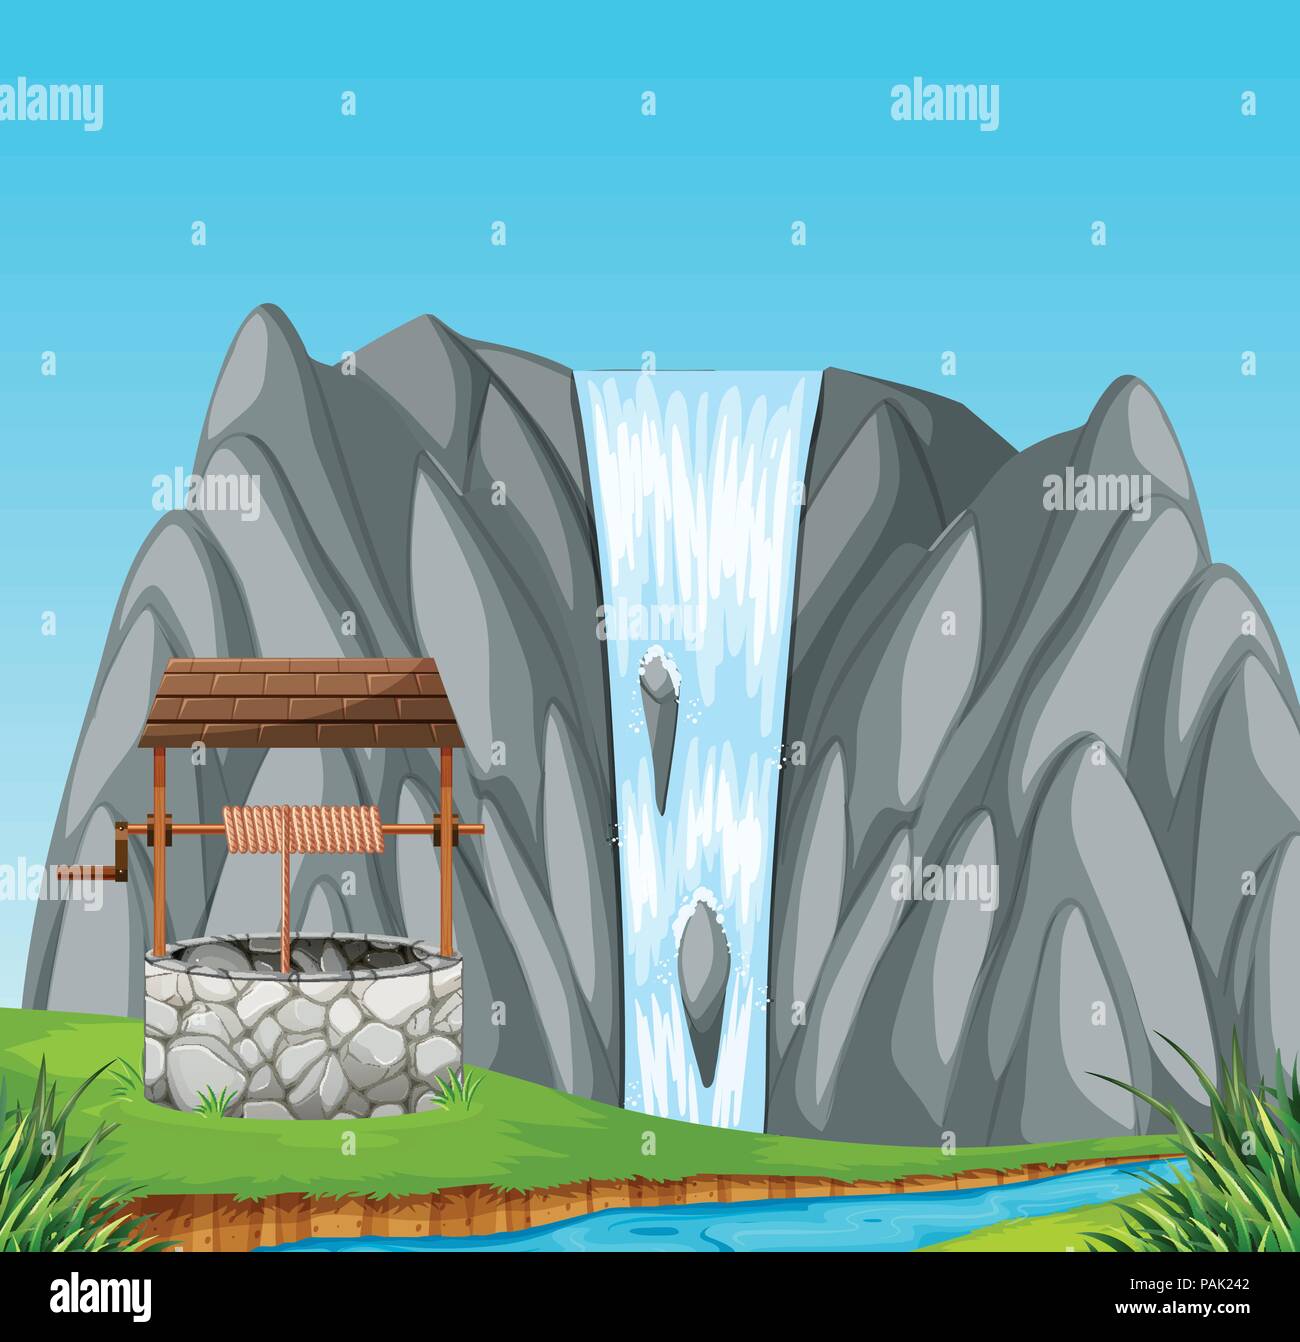 Un puits en pierre dans la nature illustration Illustration de Vecteur